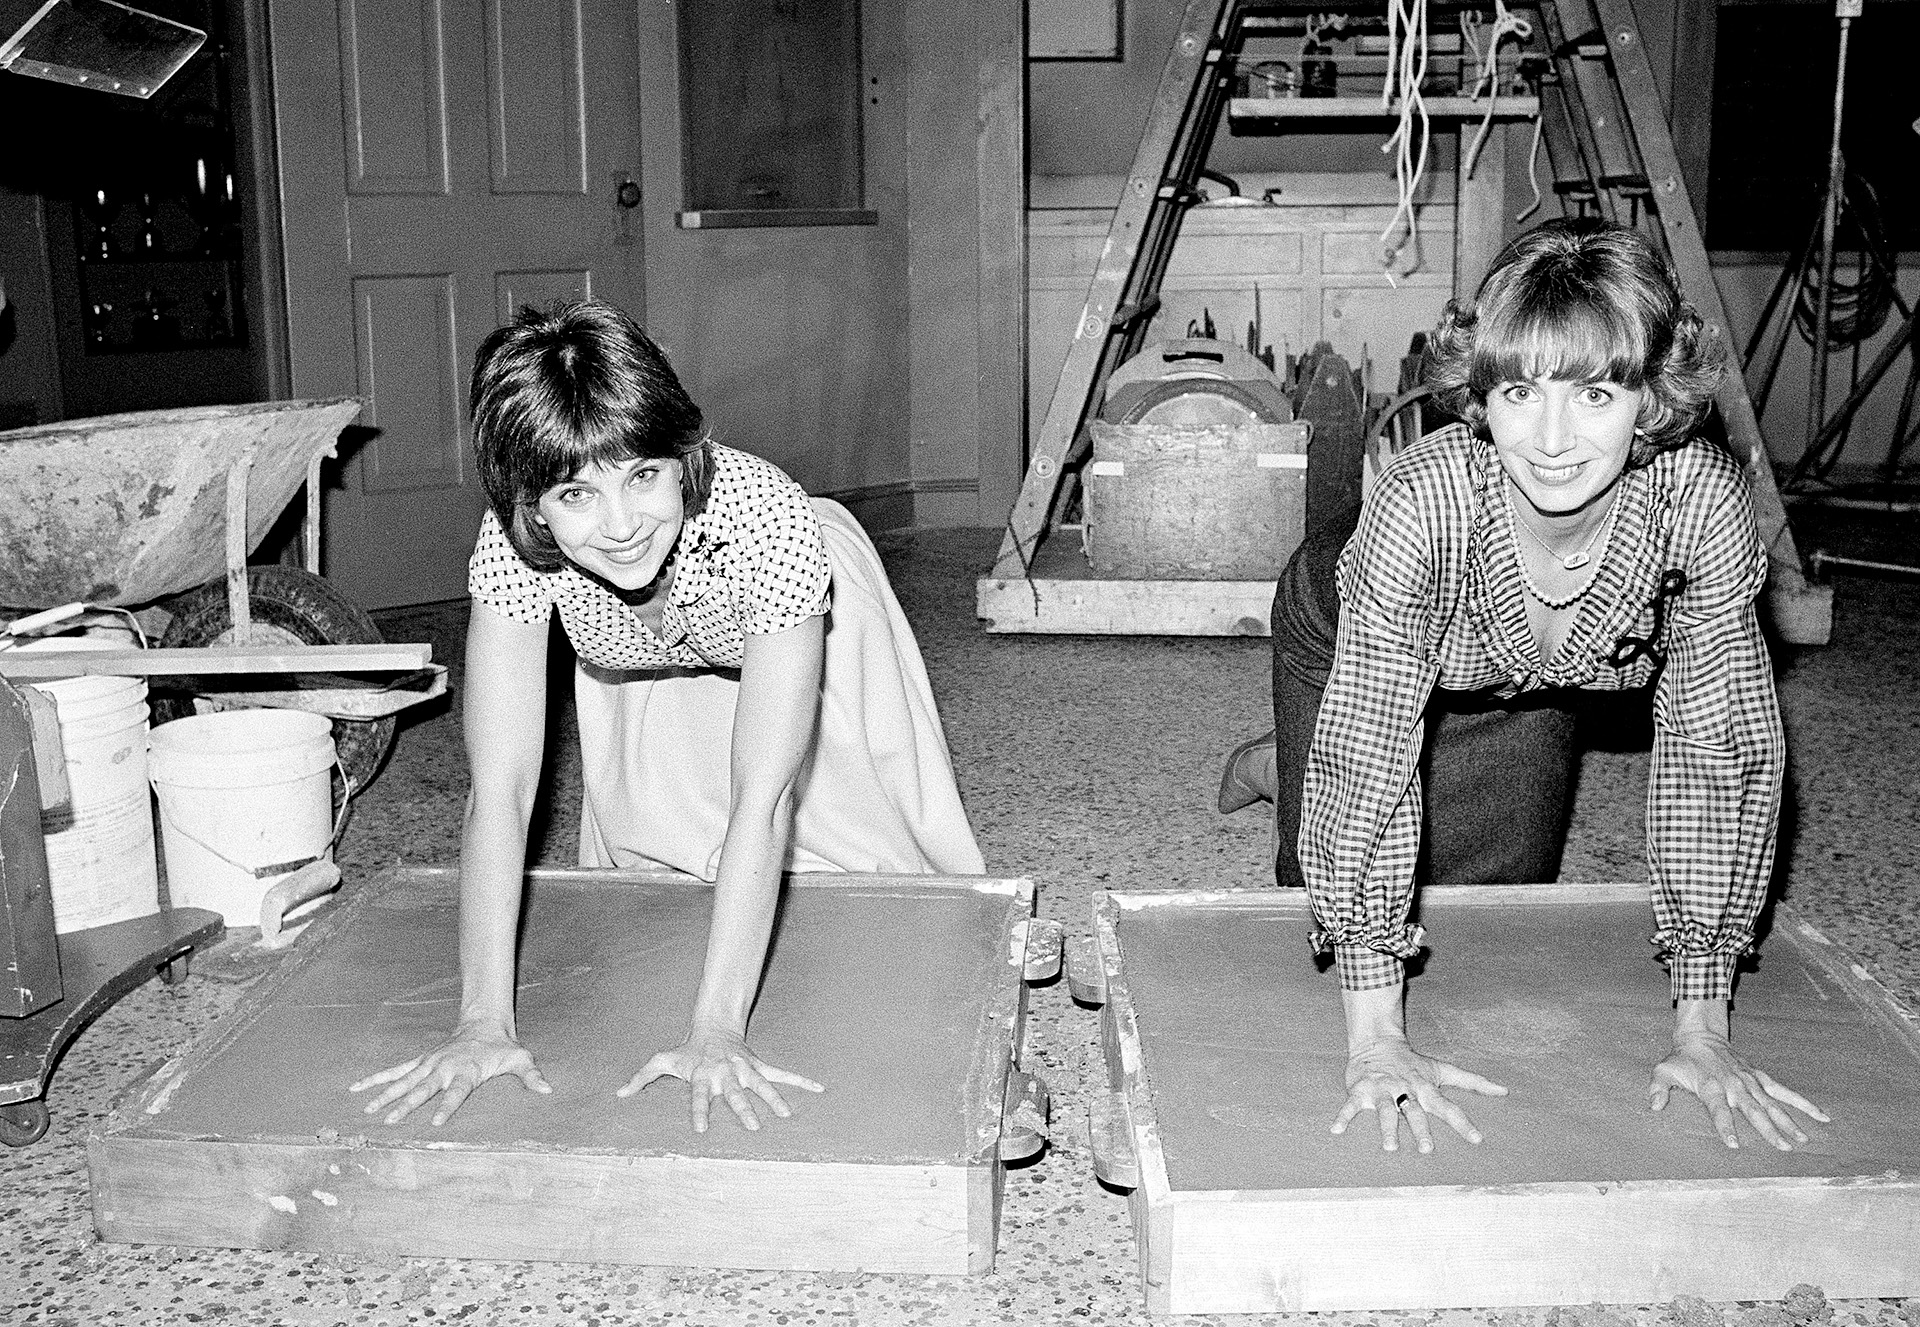 ARCHIVO - Las actrices Cindy Williams, a la izquierda, y Penny Marshall, estrellas de la serie de comedia de ABC-TV "Laverne and Shirley", dejan una huella en el cemento después de la grabación de su programa en Los Ángeles, el 14 de noviembre de 1979.  (AP Photo/Lennox McLendon, File)